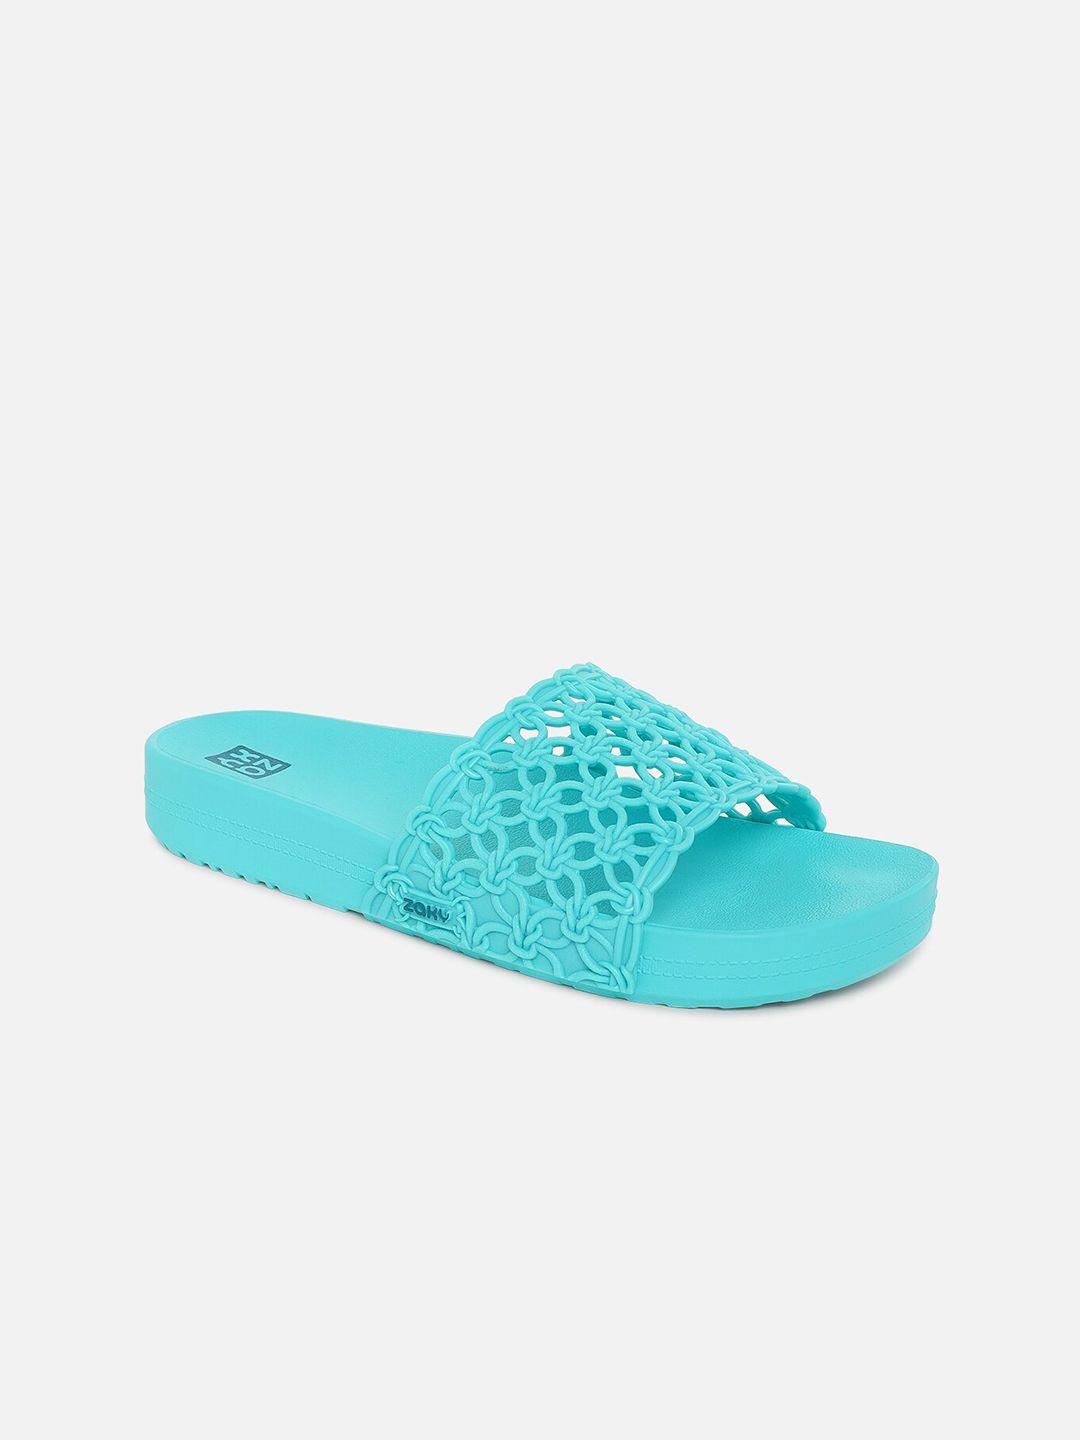 zaxy women blue open toe flats